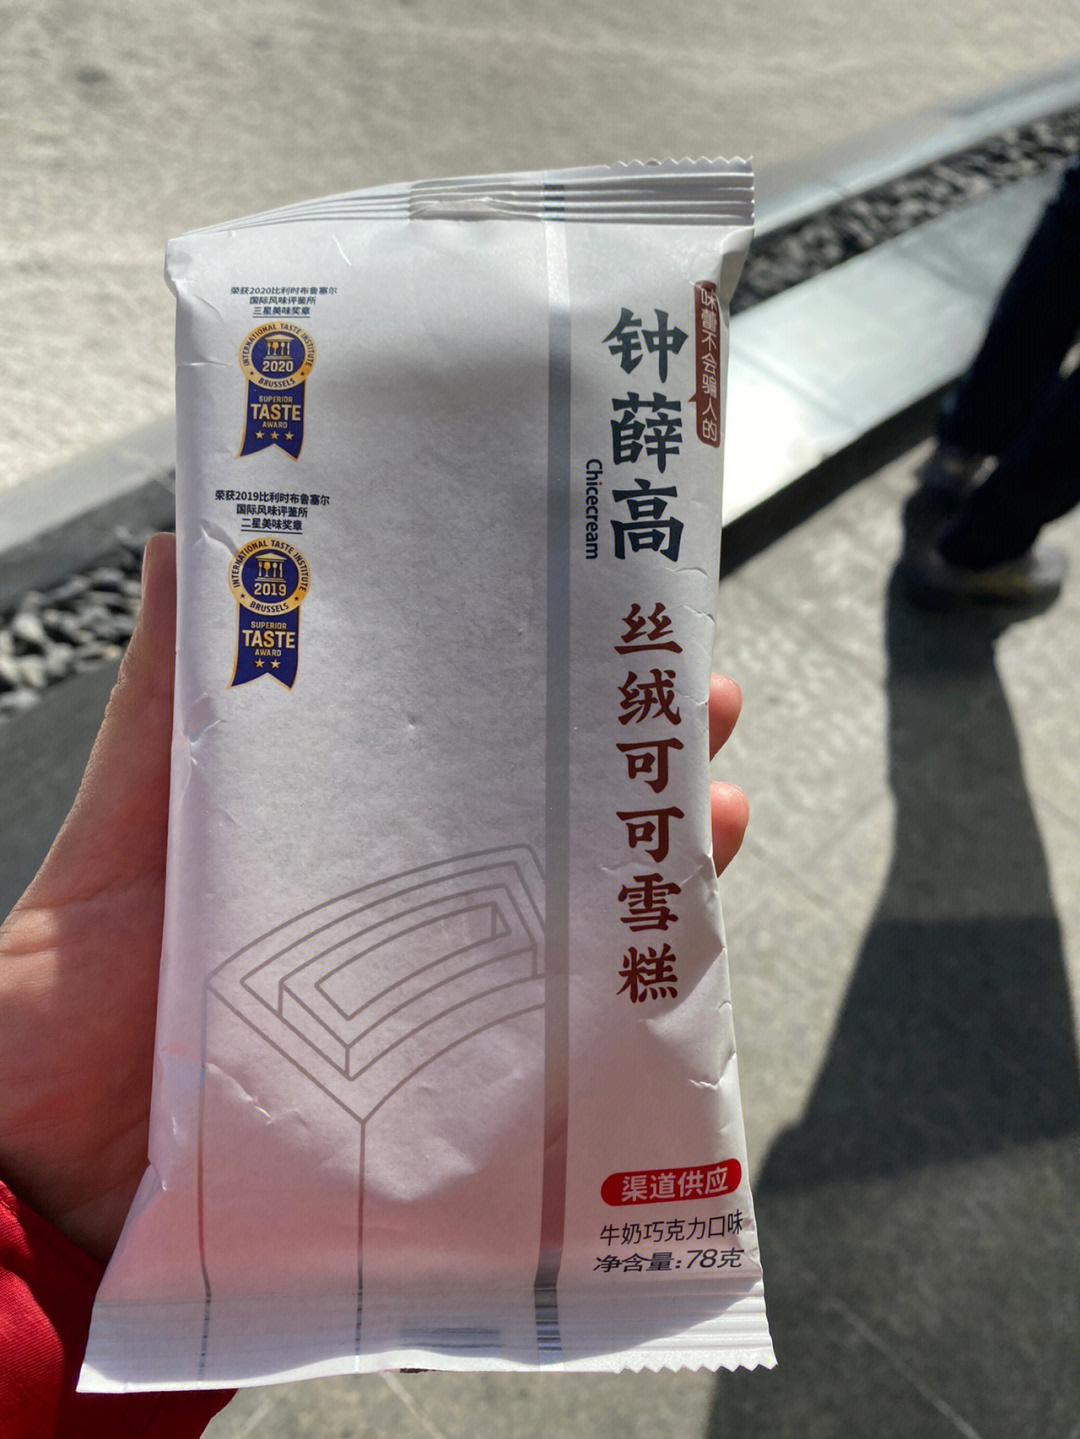 中国最贵的冰淇淋图片